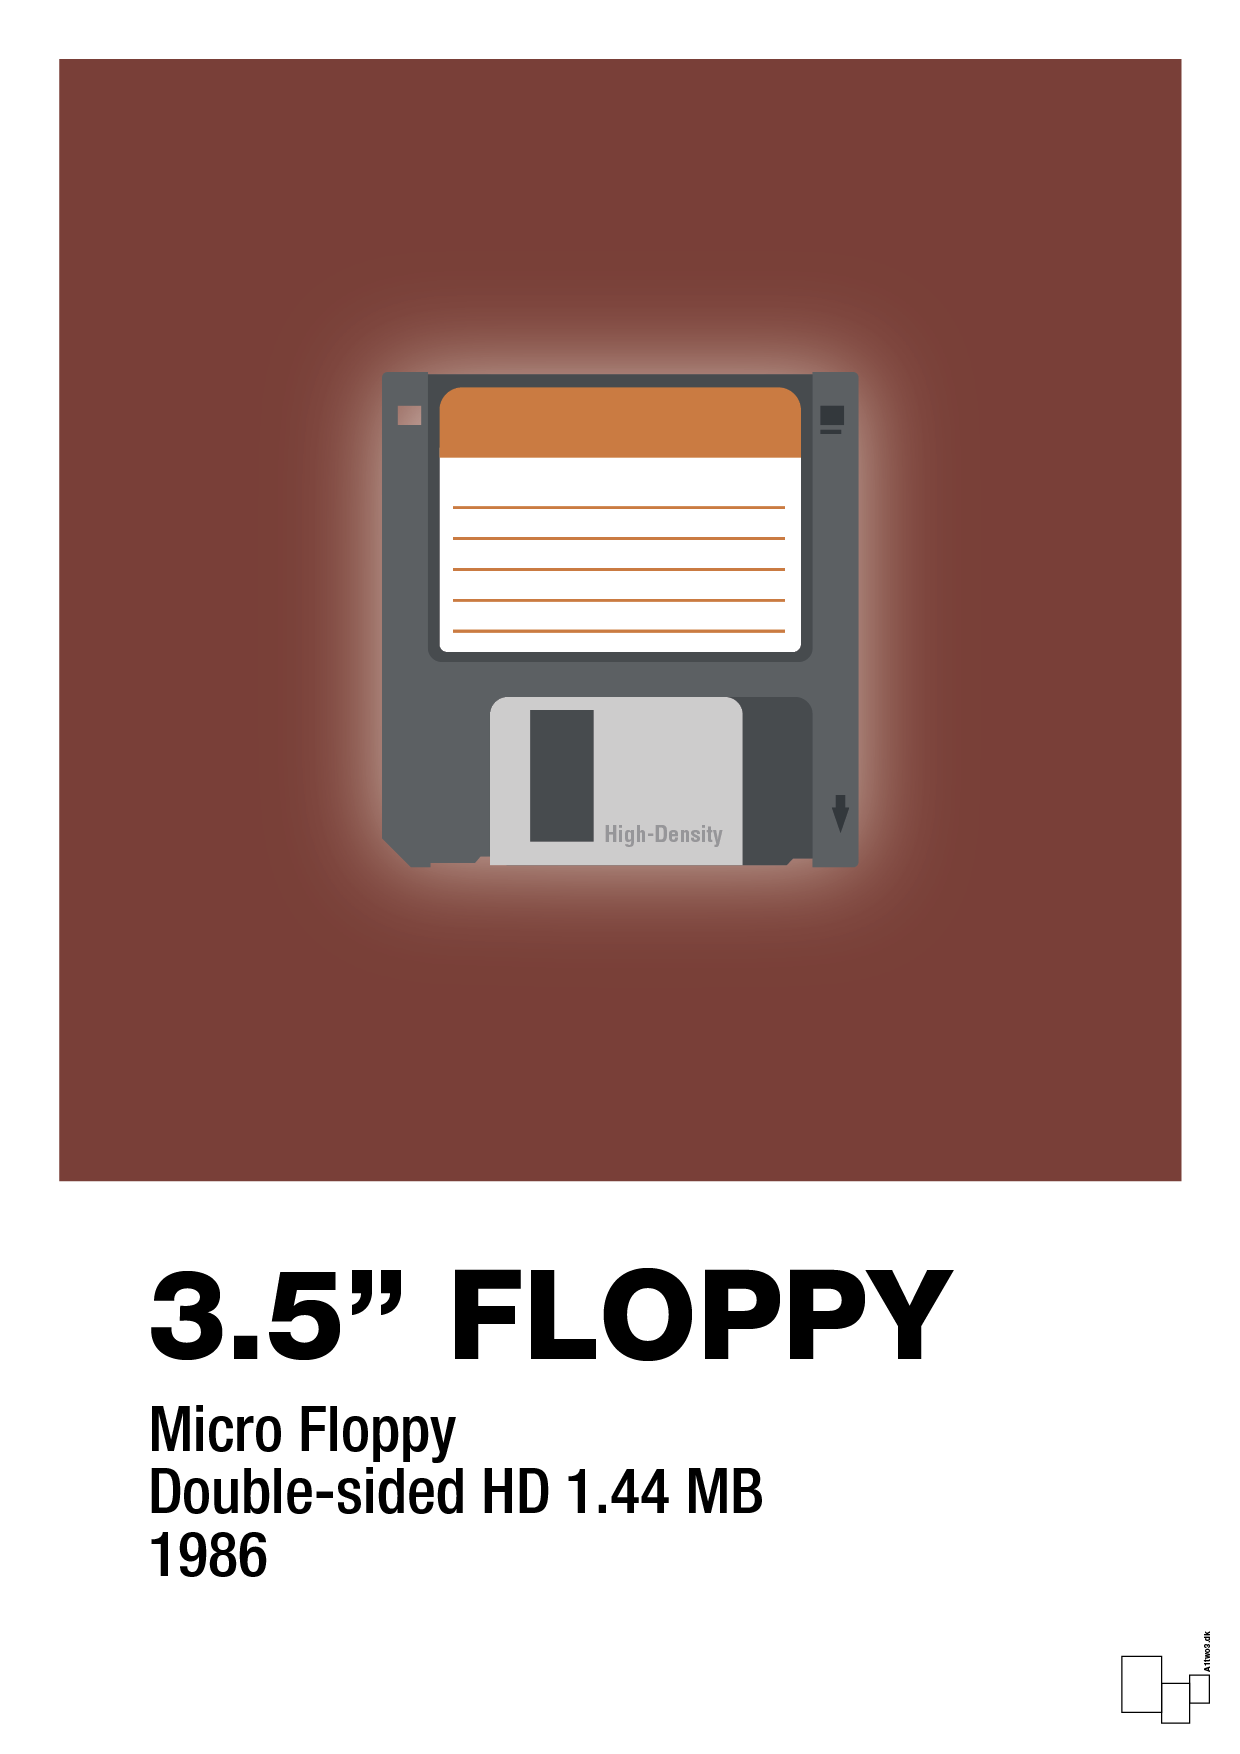 floppy disc 3.5" - Plakat med Grafik i Red Pepper